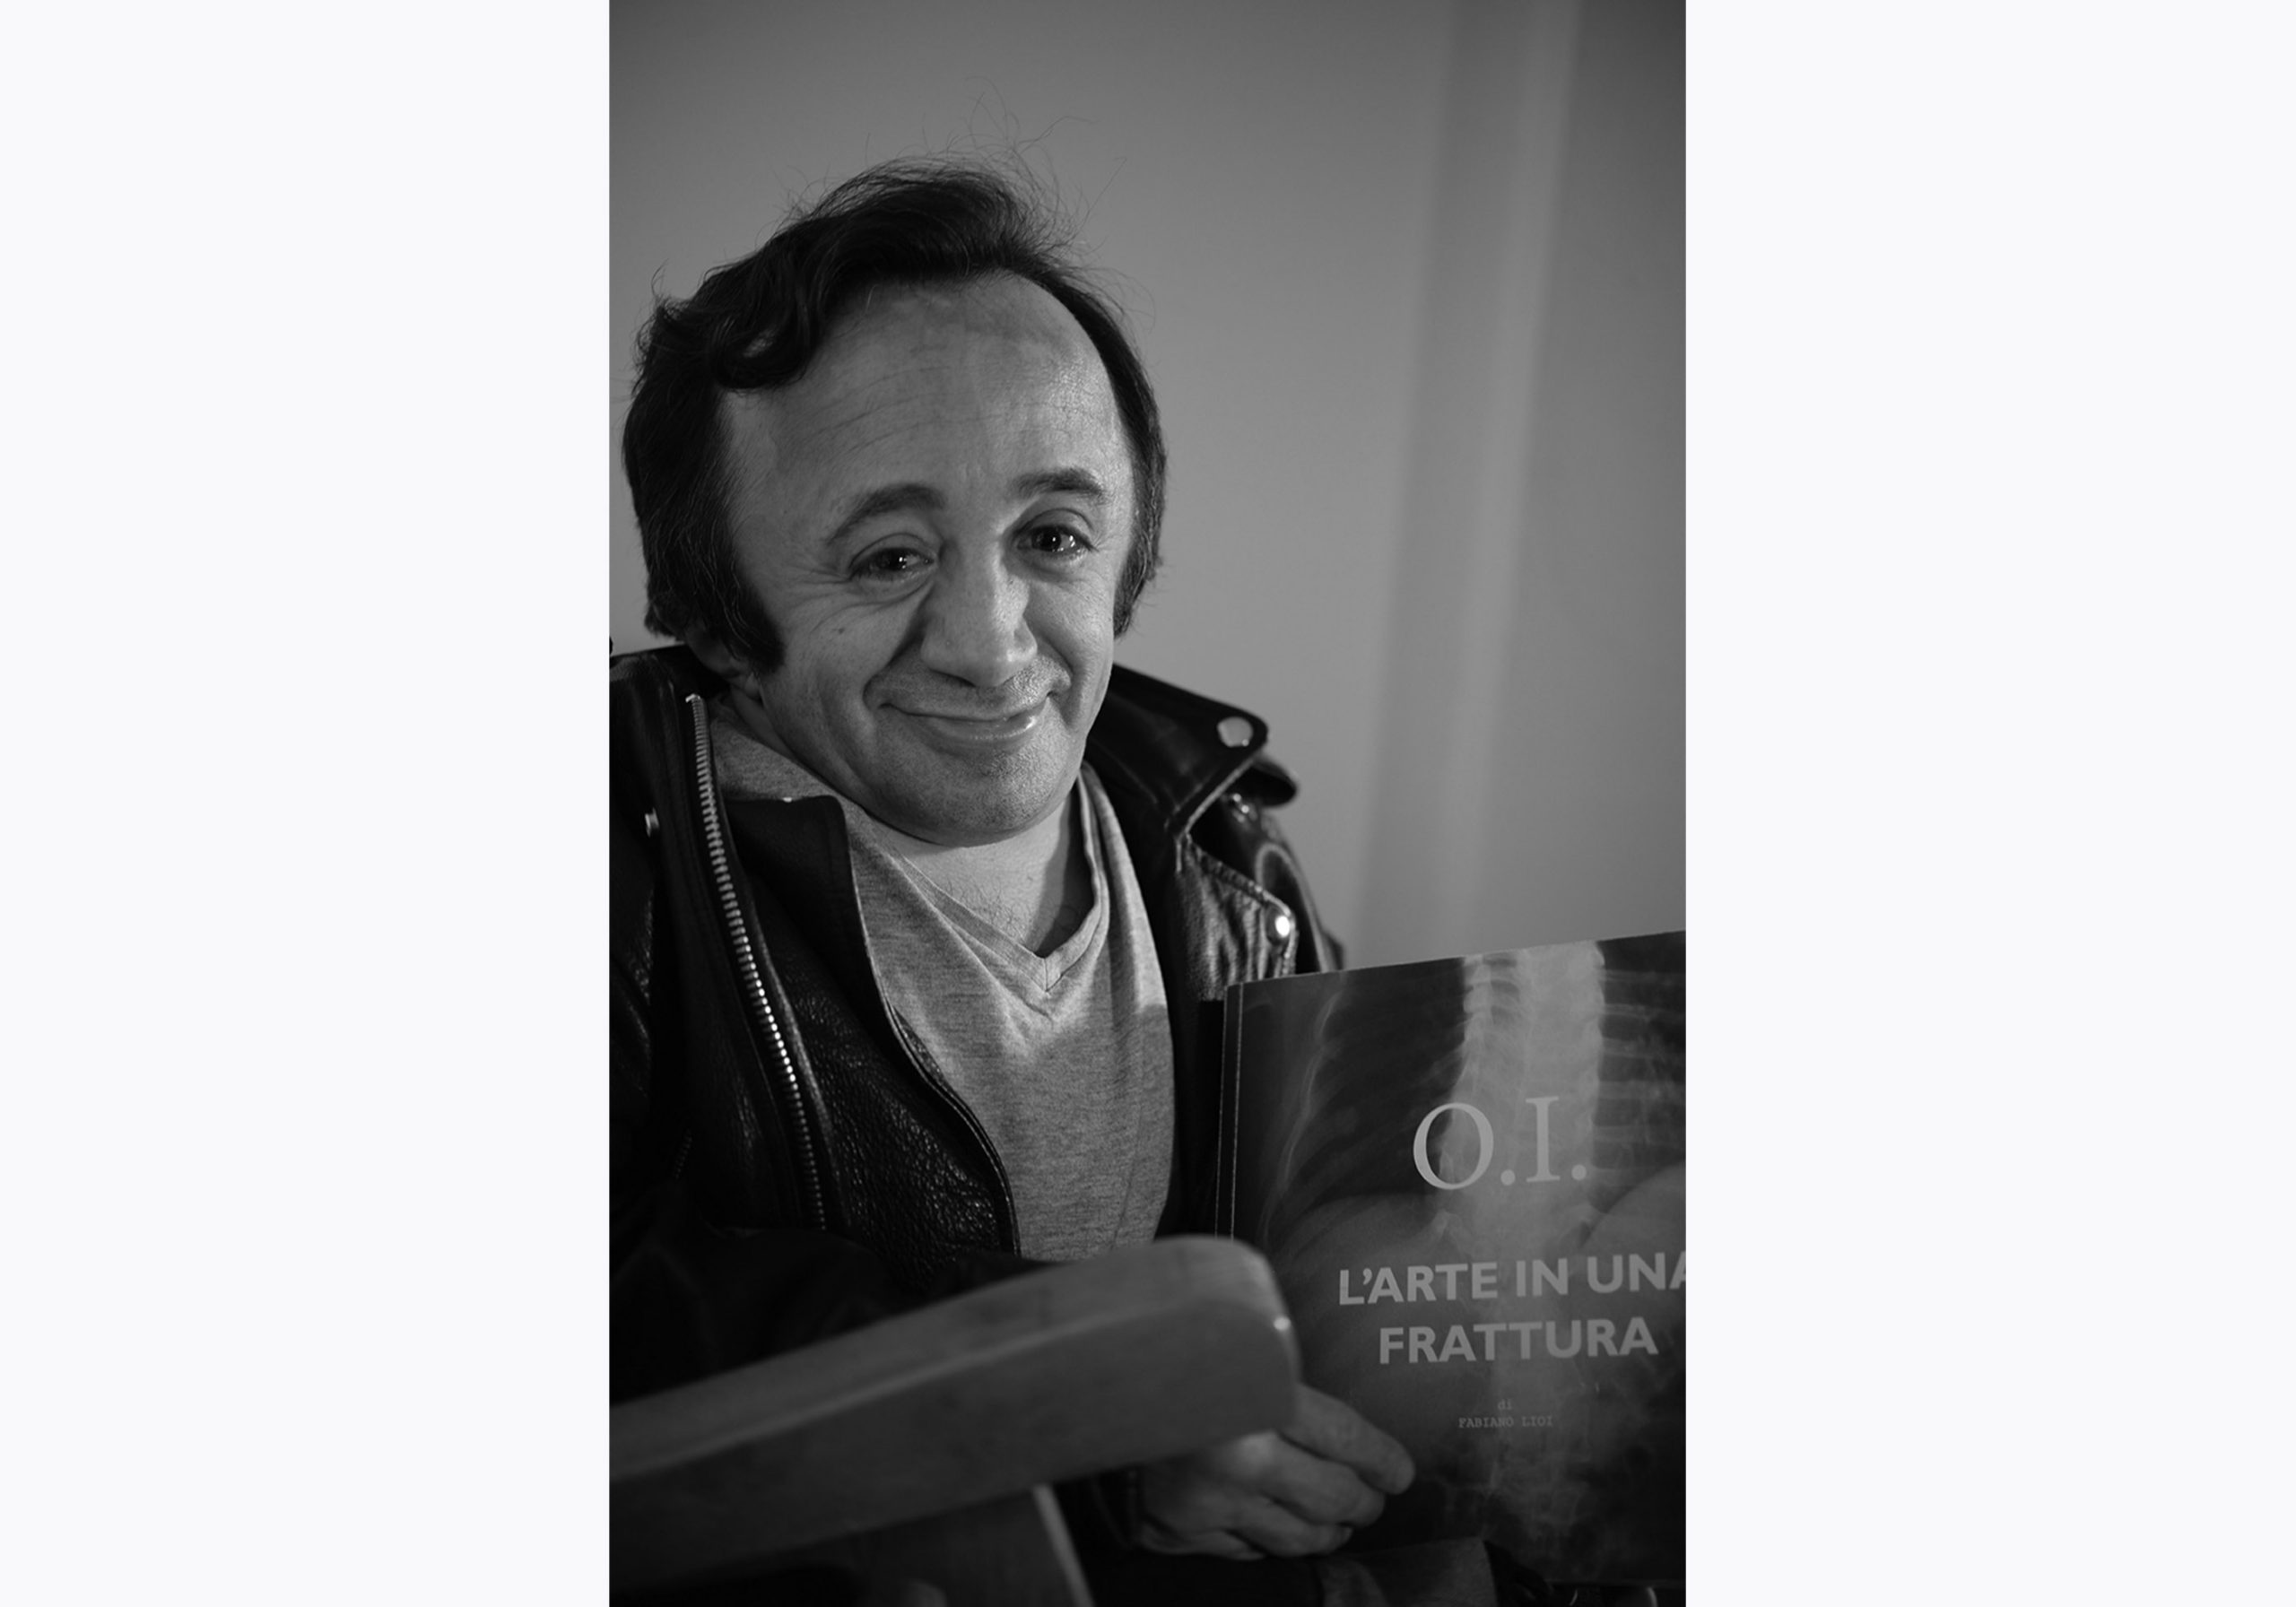 Fabiano Lioi è l'autore di O.I. L'arte in una frattura. Stampiamo insieme il libro con la campagna di crowdfunding. In questa foto tiene in mano la prova stampa del libro e guarda sorridente in macchina.